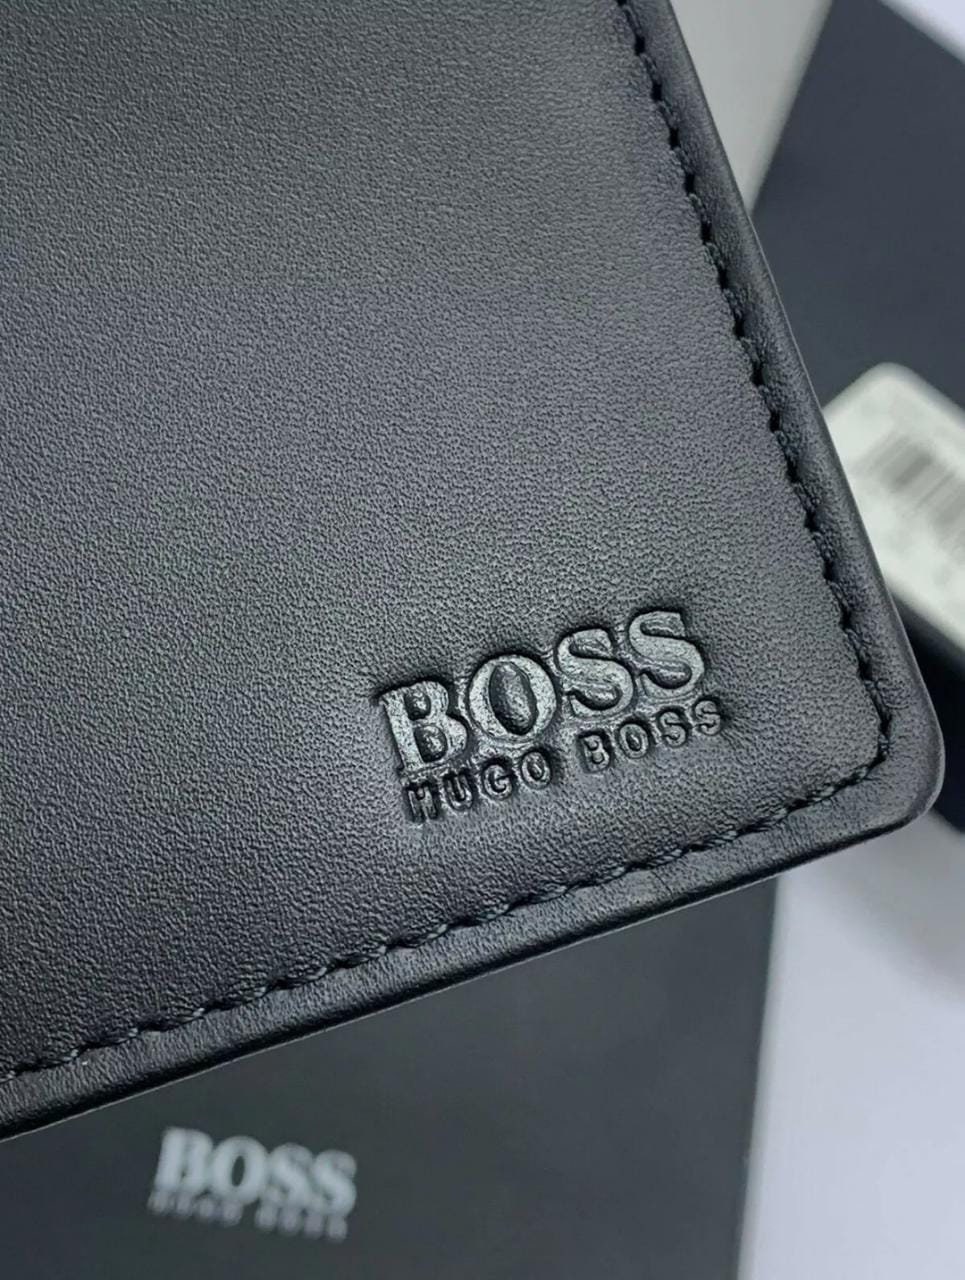 indsigelse afbalanceret pelleten Hugo Boss Arezzo Black Men's Leather Trifold Wallet With - Etsy